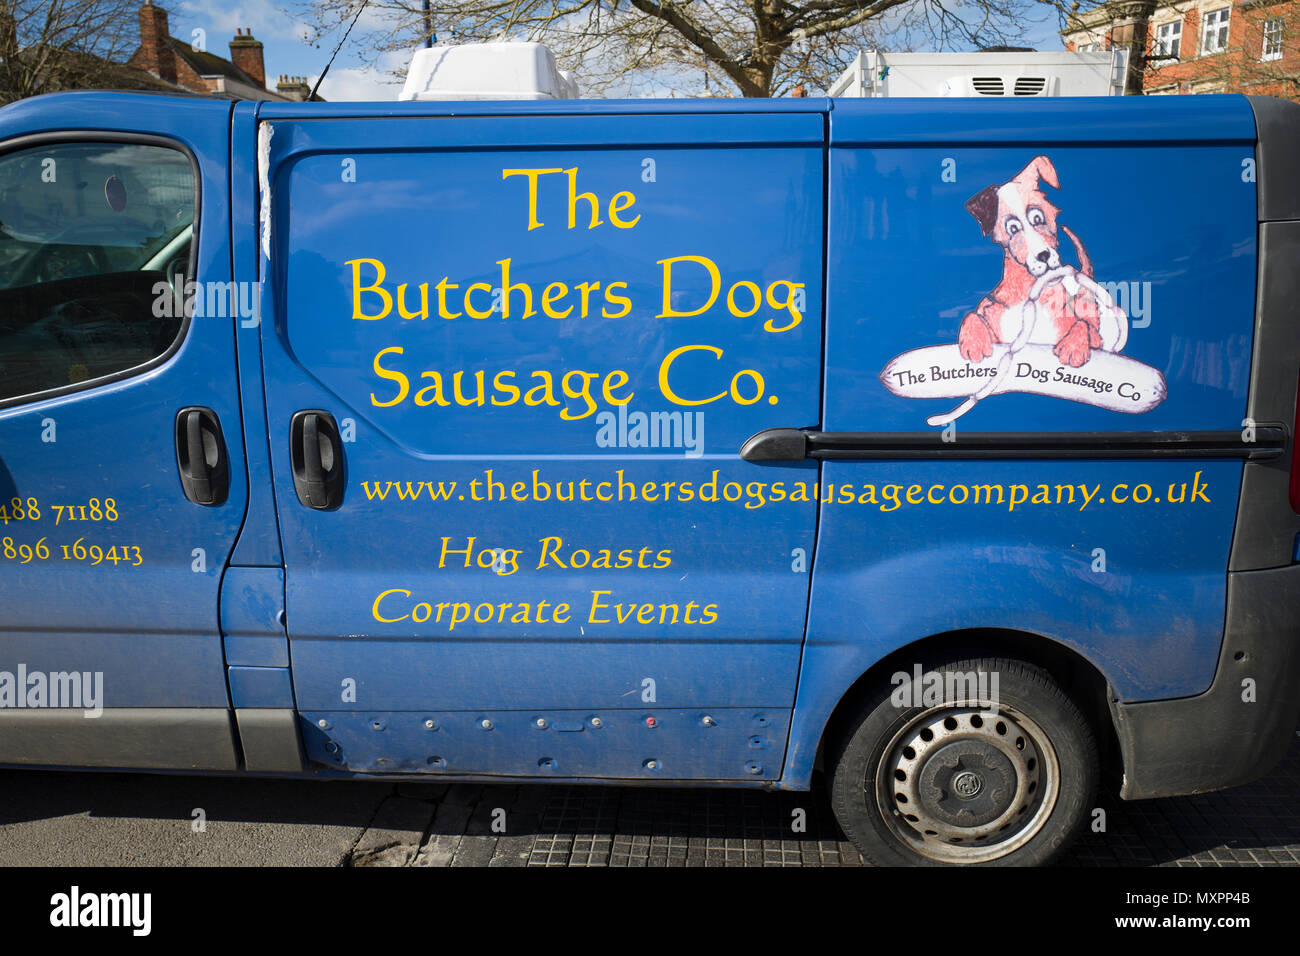 Seite eines caatering van Förderung des Business bezeichnet die Metzger Hund Wurst Unternehmen im Westen Land England Großbritannien Stockfoto